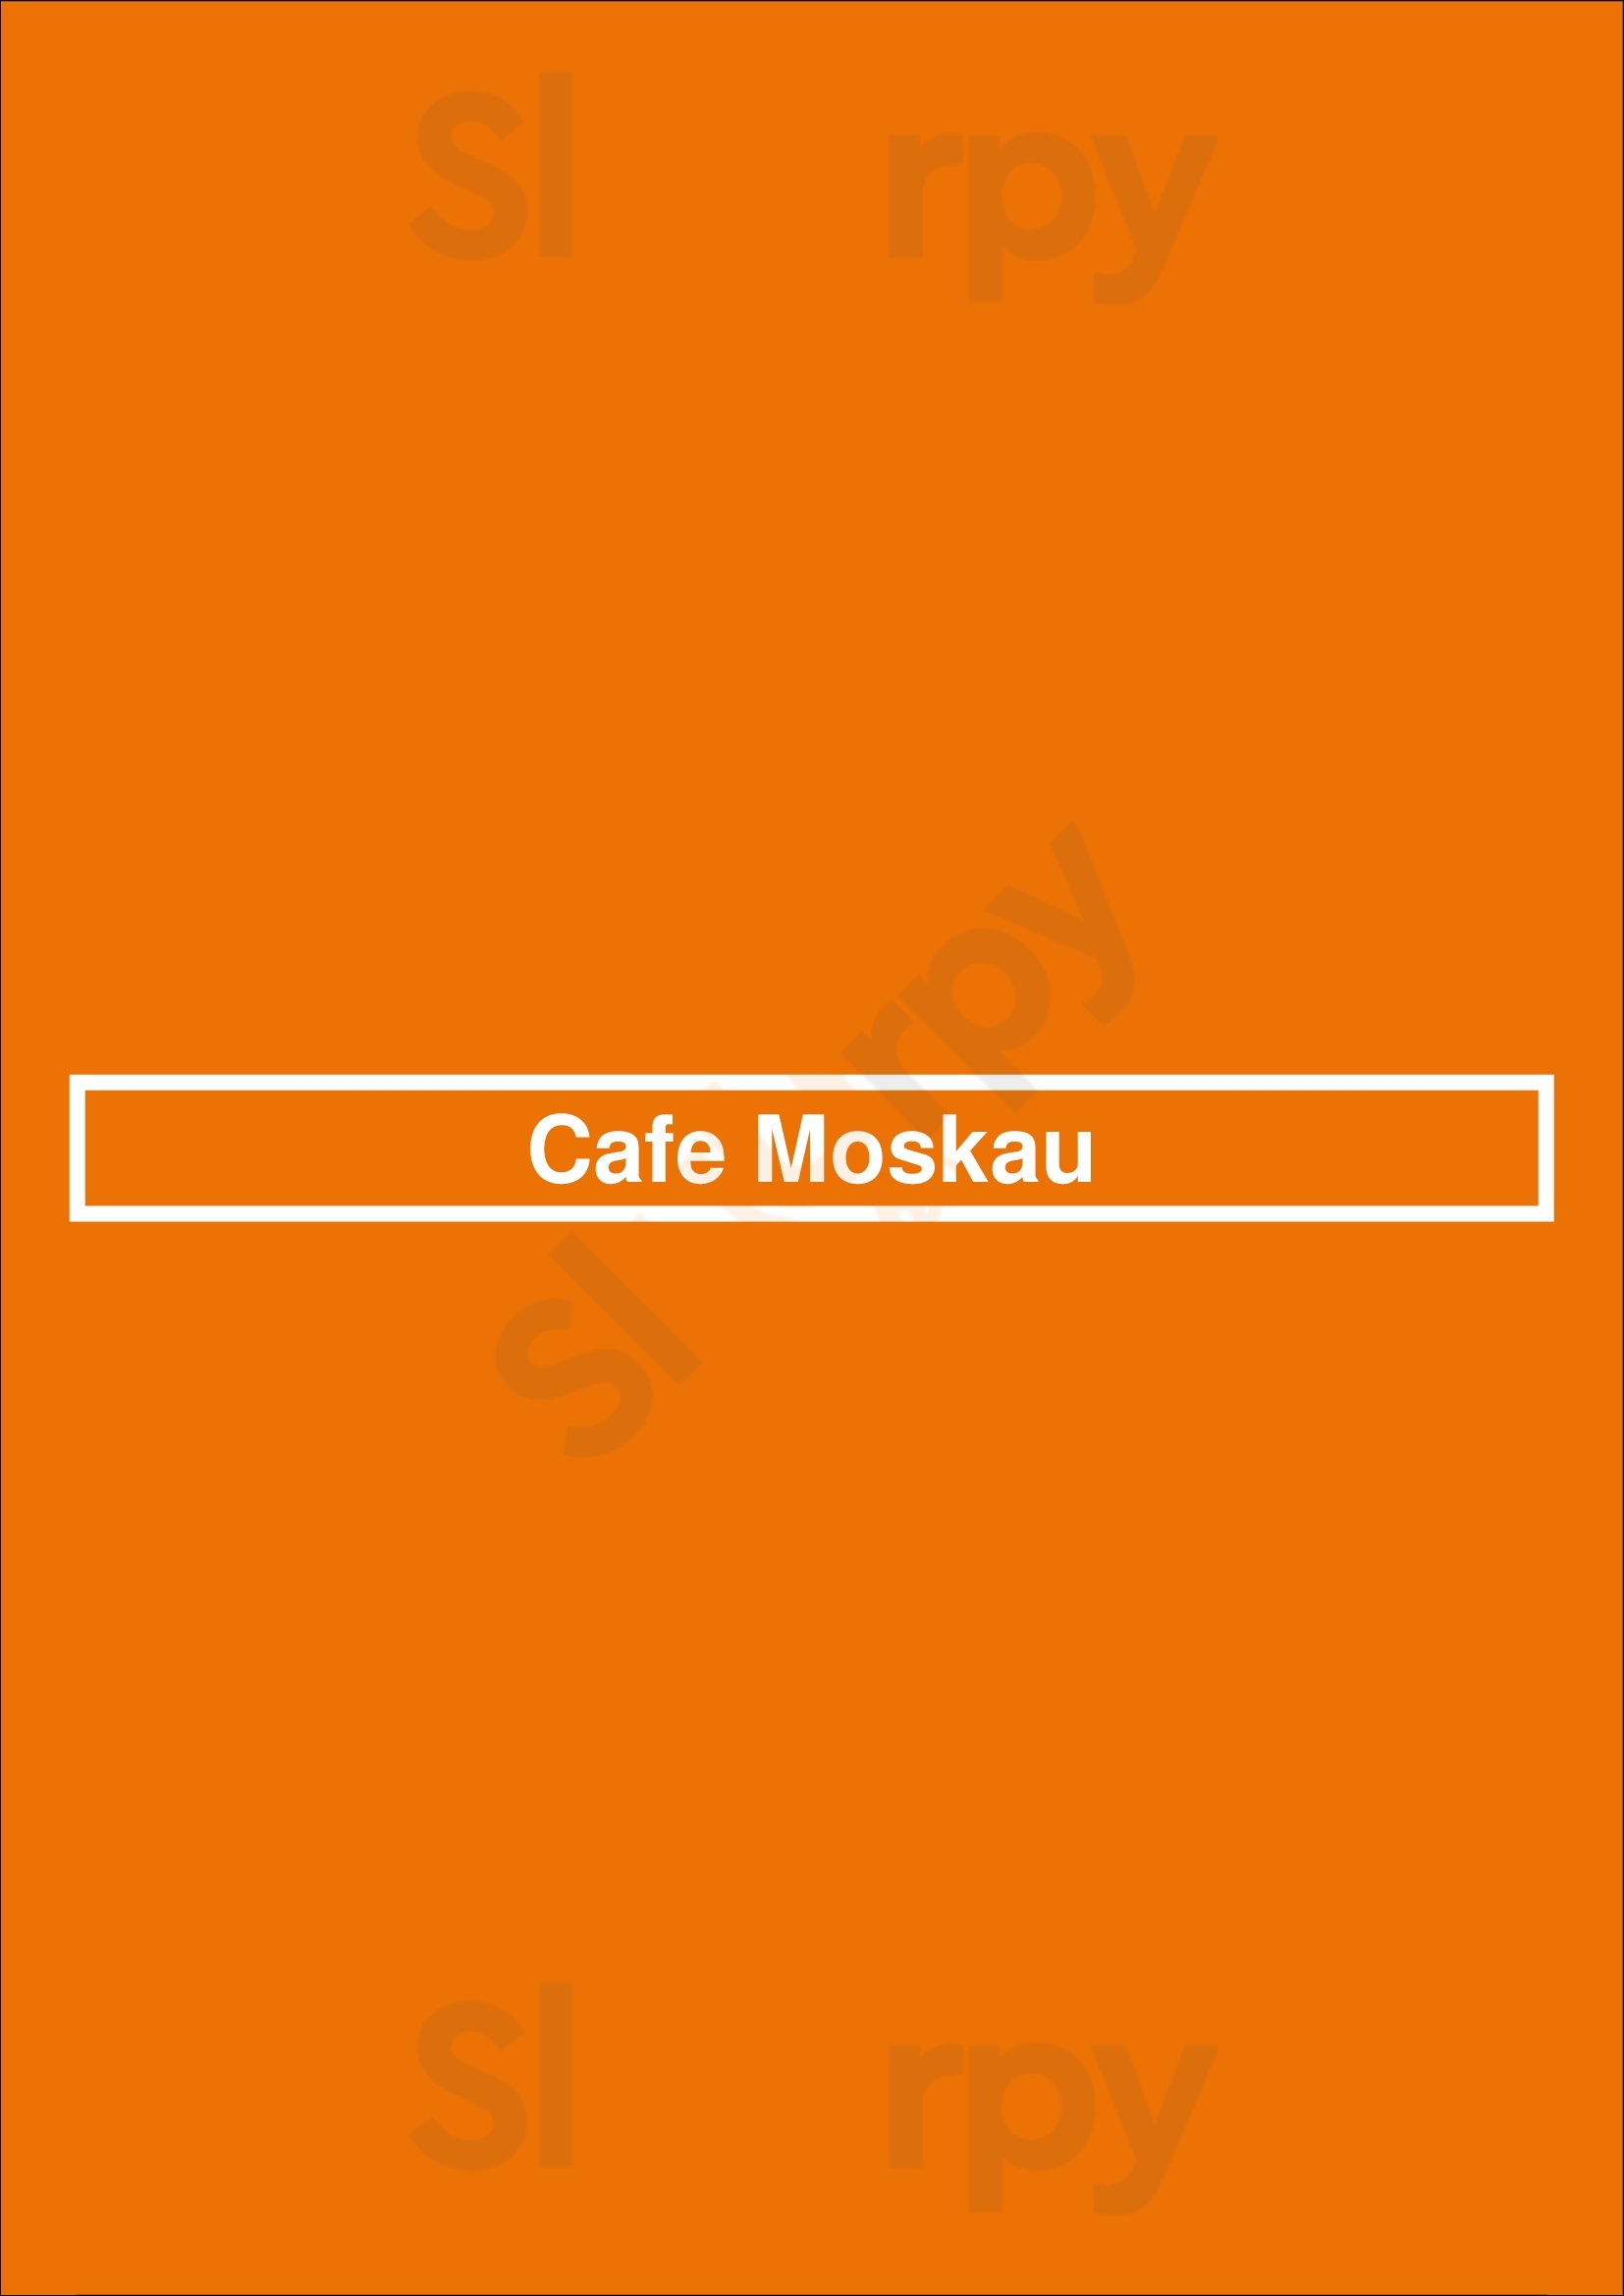 Cafe Moskau Chemnitz Menu - 1